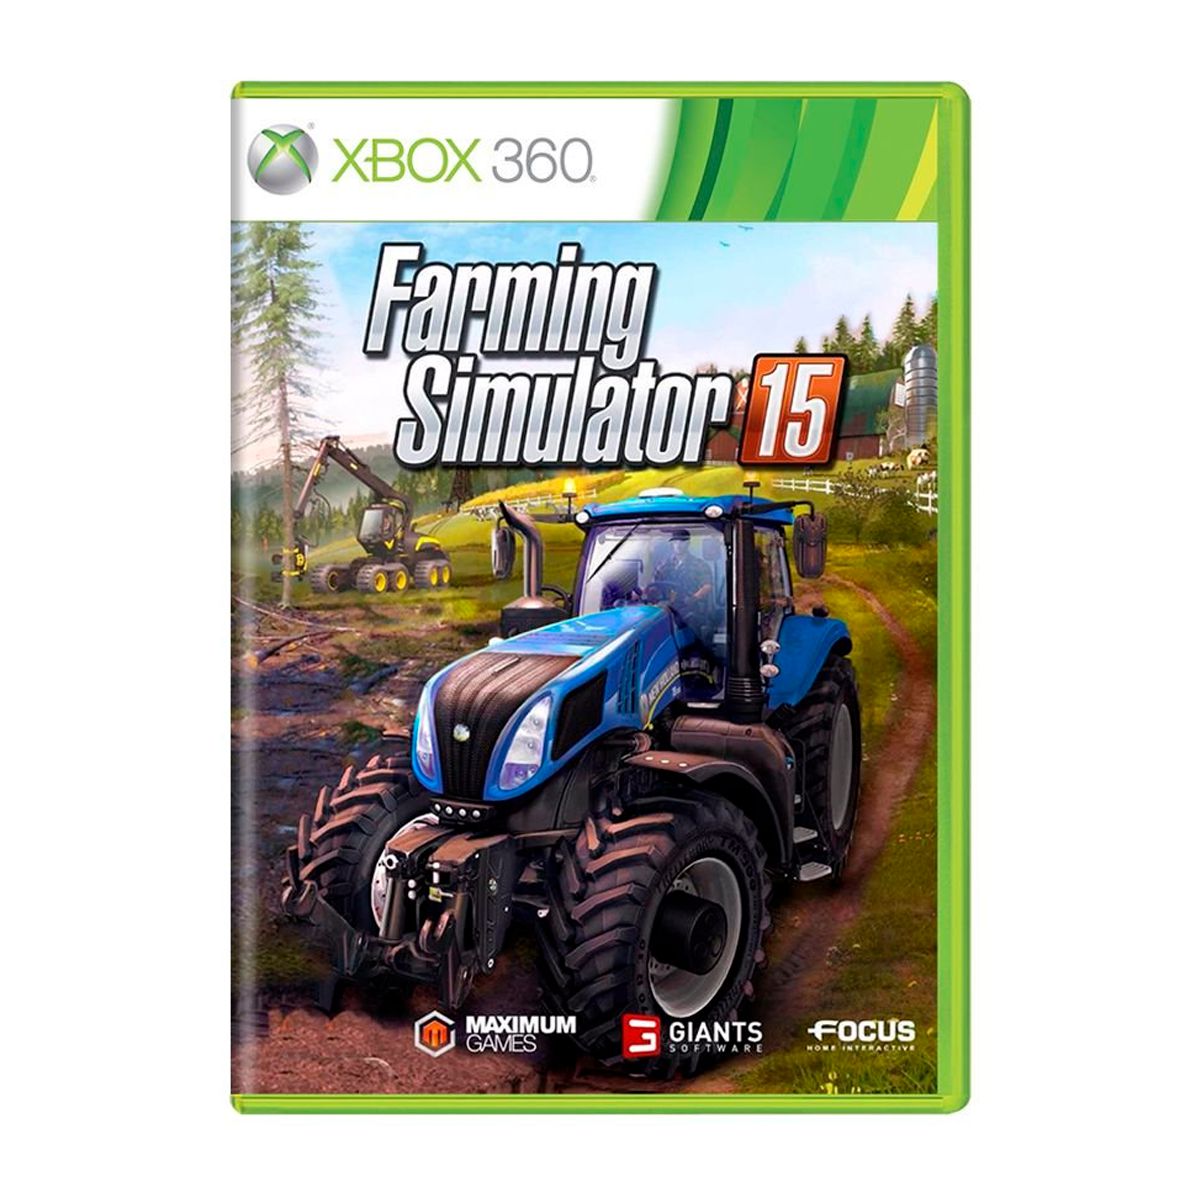 Farming Simulator 15: como jogar o simulador de fazenda - RMTS Informática